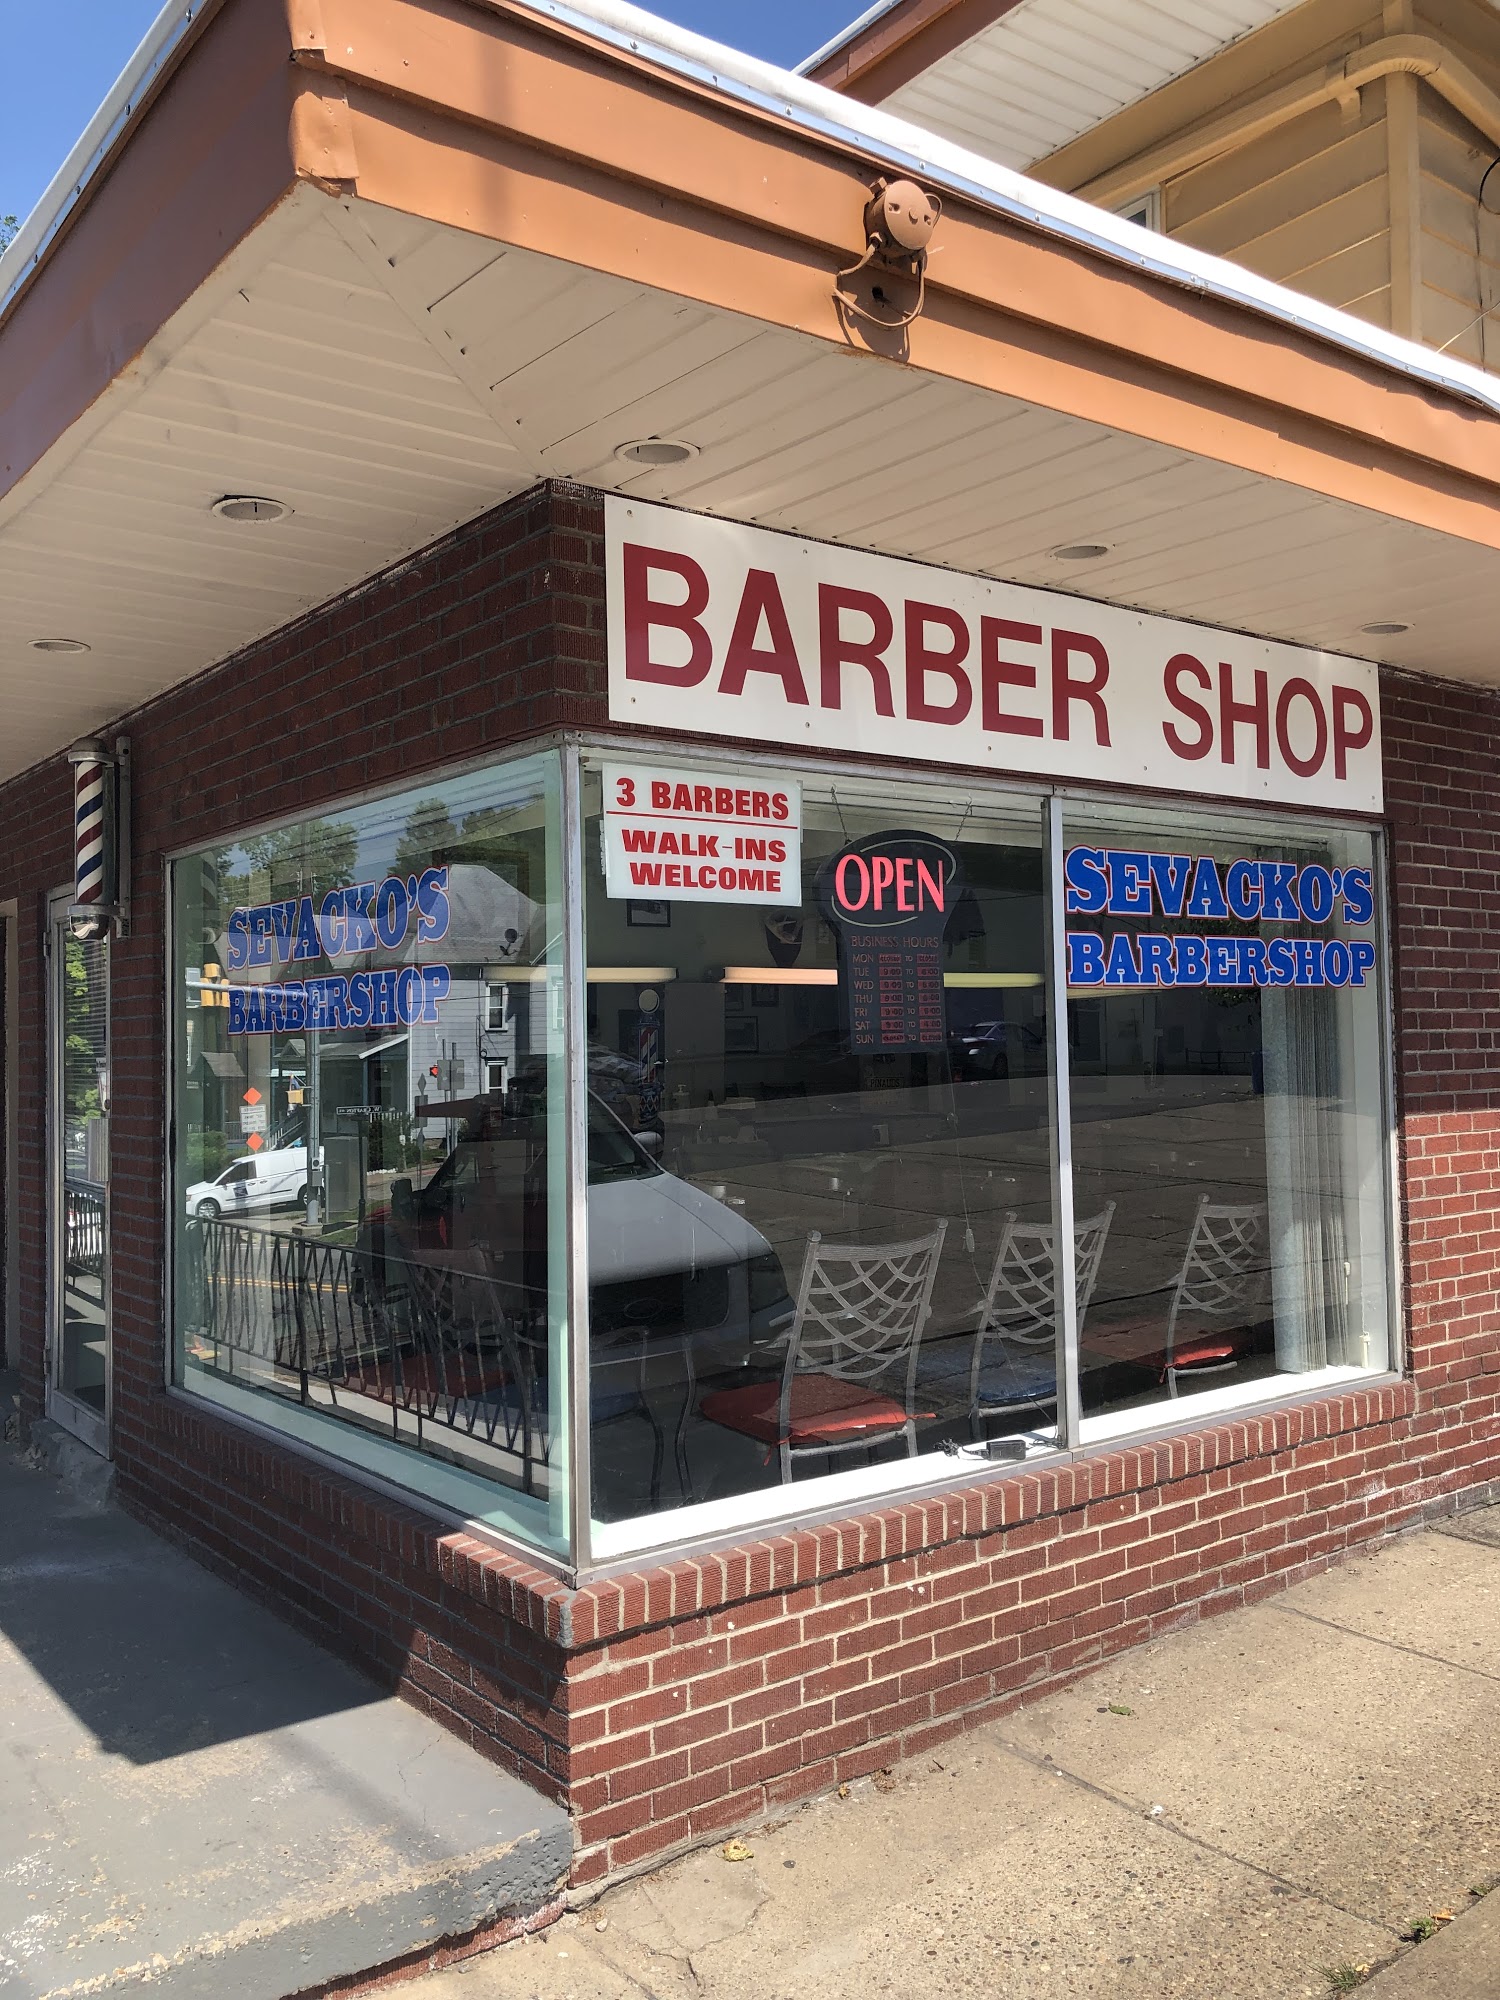 Sevacko’s barbershop